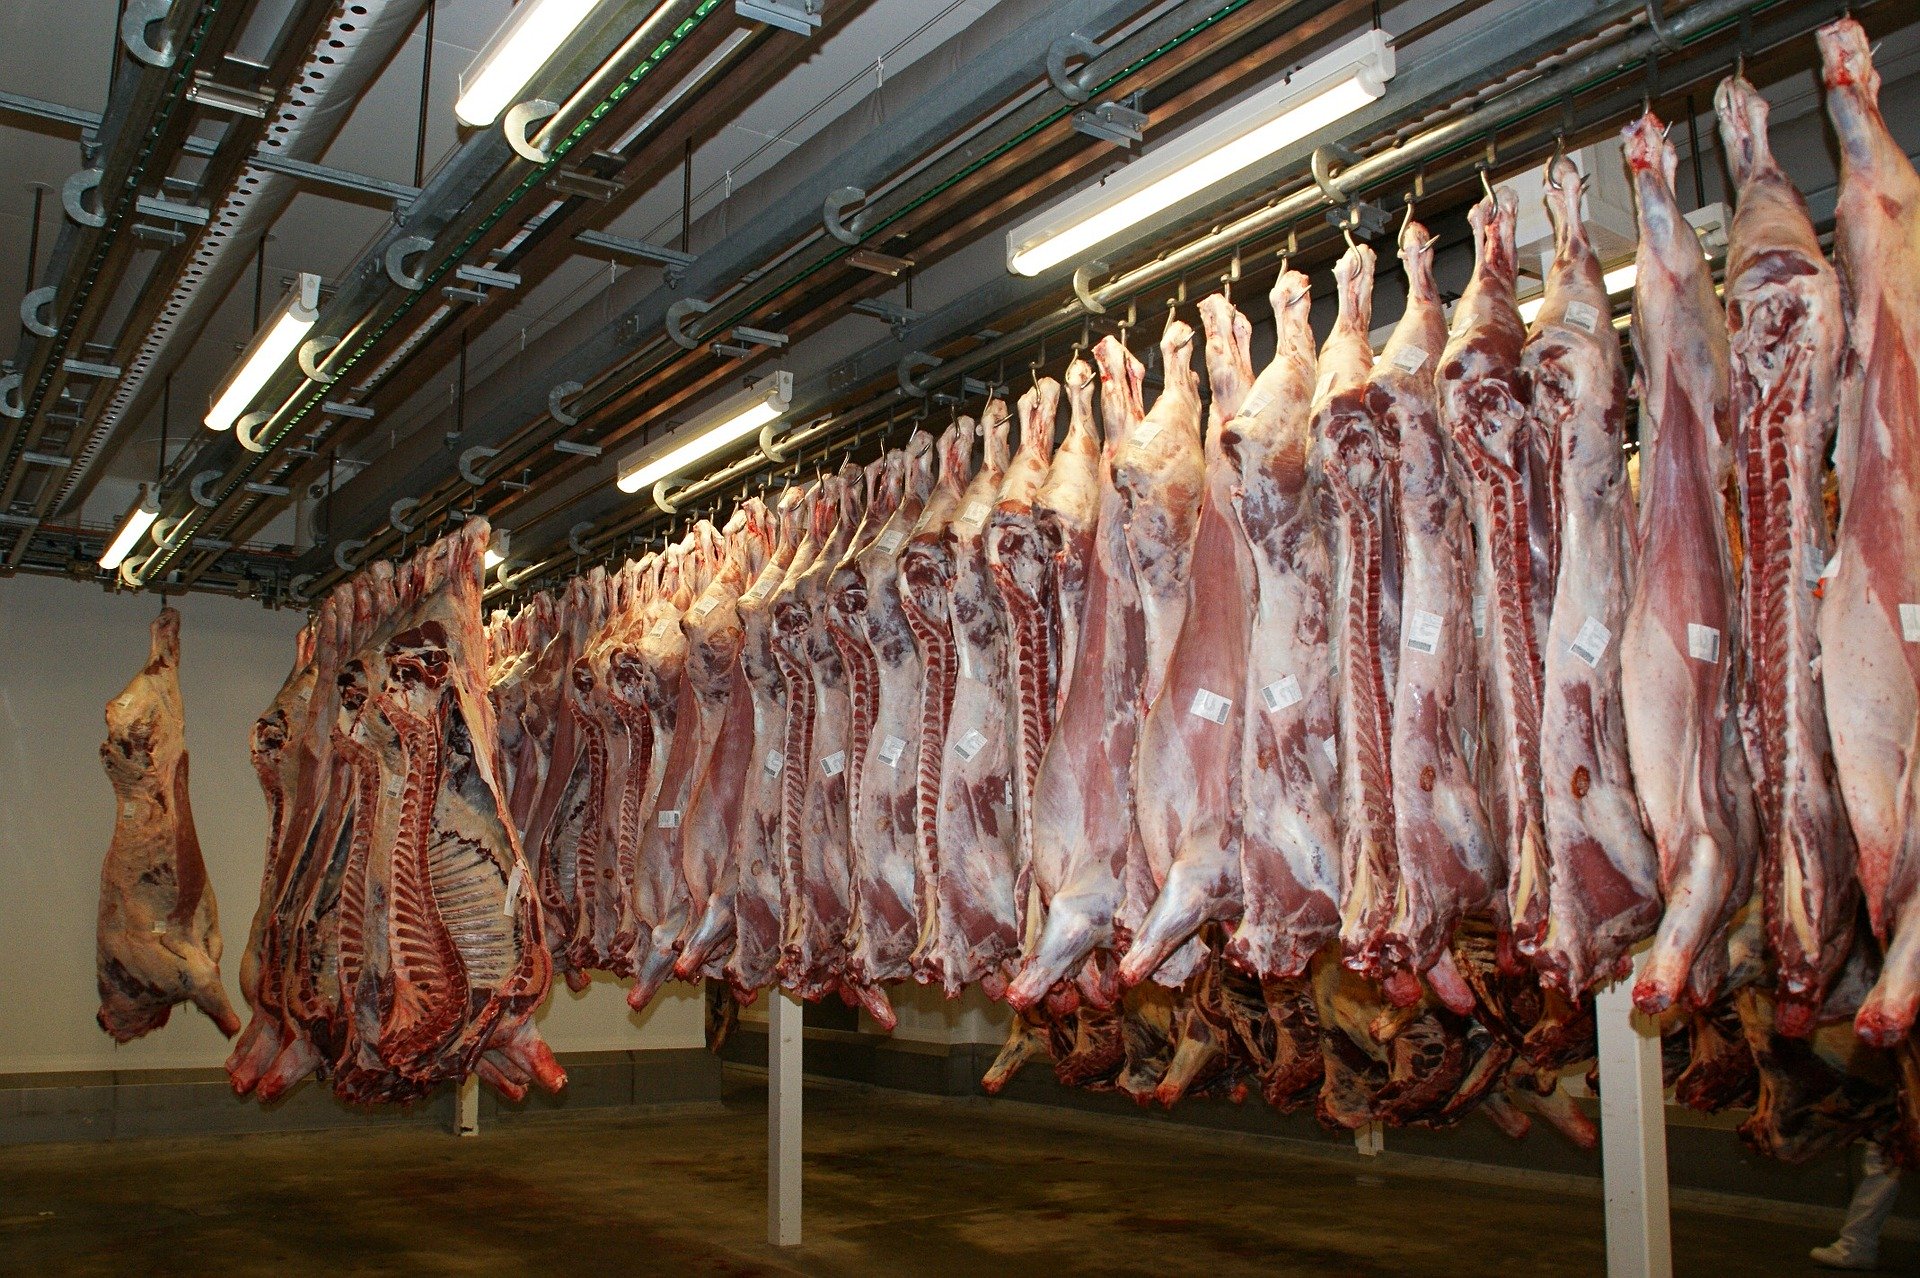 Γιατί οι εργαζόμενοι σε εργοστάσια κρέατος κινδυνεύουν περισσότερο από κορωνοϊό; (φωτο)